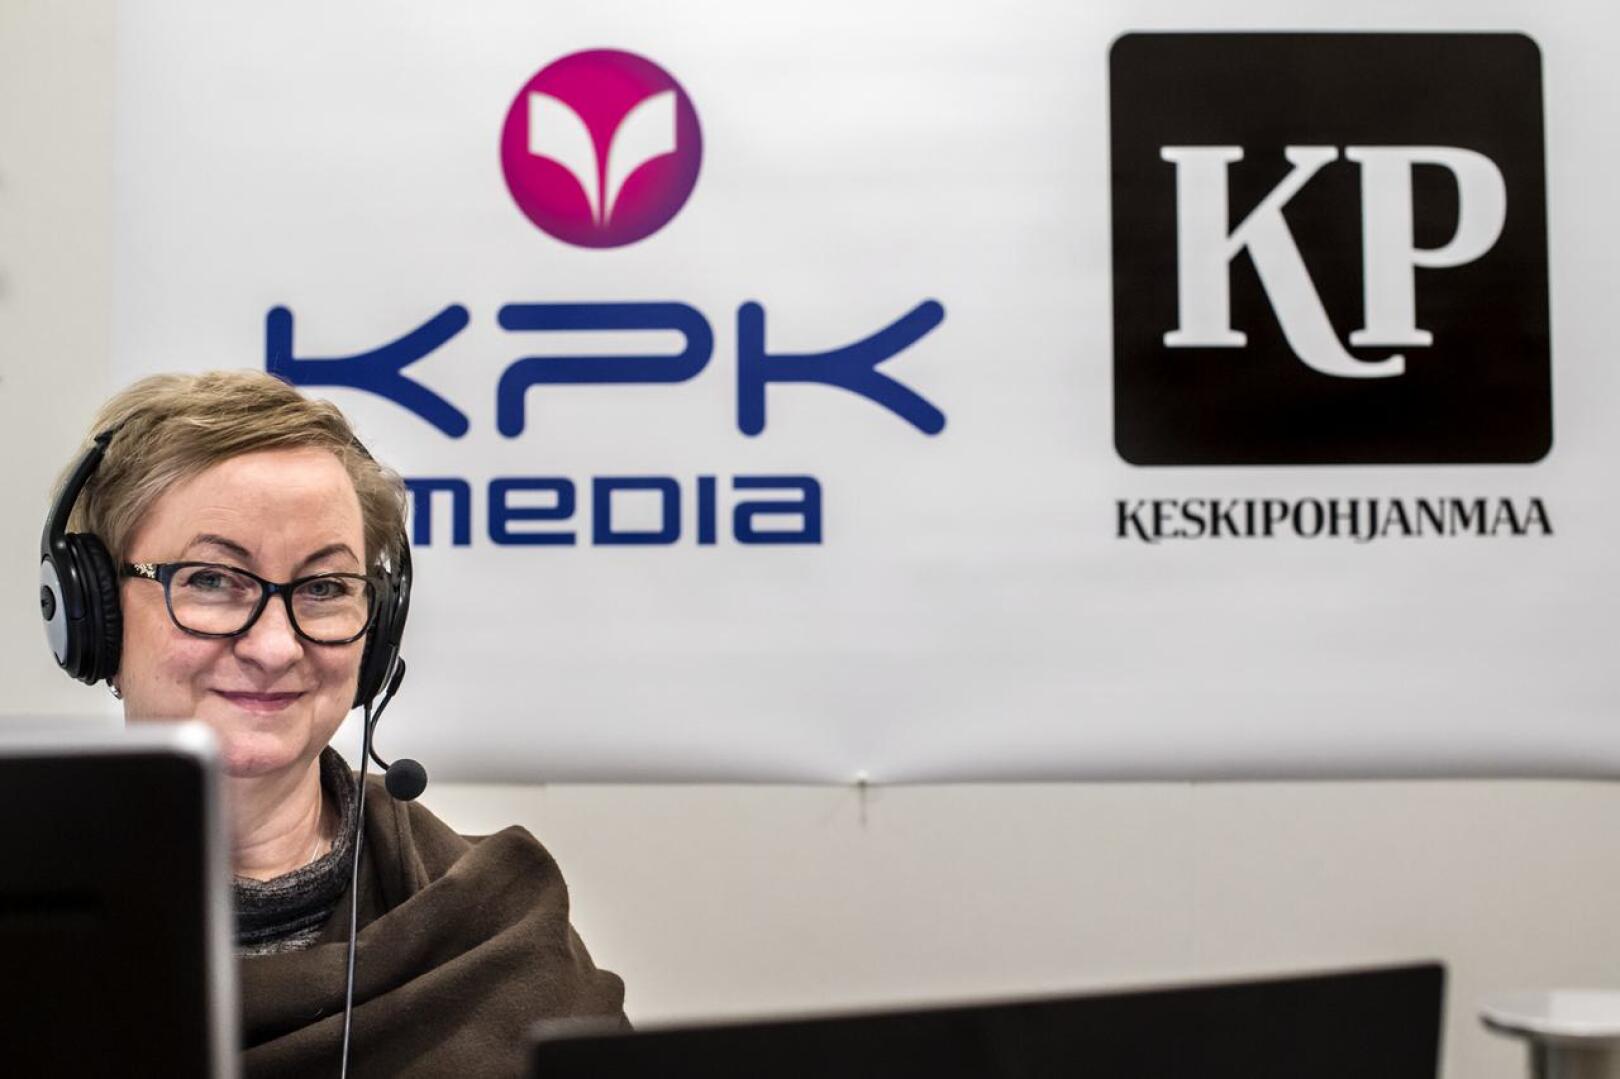 KPK Yhtiöiden sisältöjohtaja, Keskipohjanmaa-lehden päätoimittaja Tiina Ojutkangas arvostaa Lännen Median laatujuttuja.